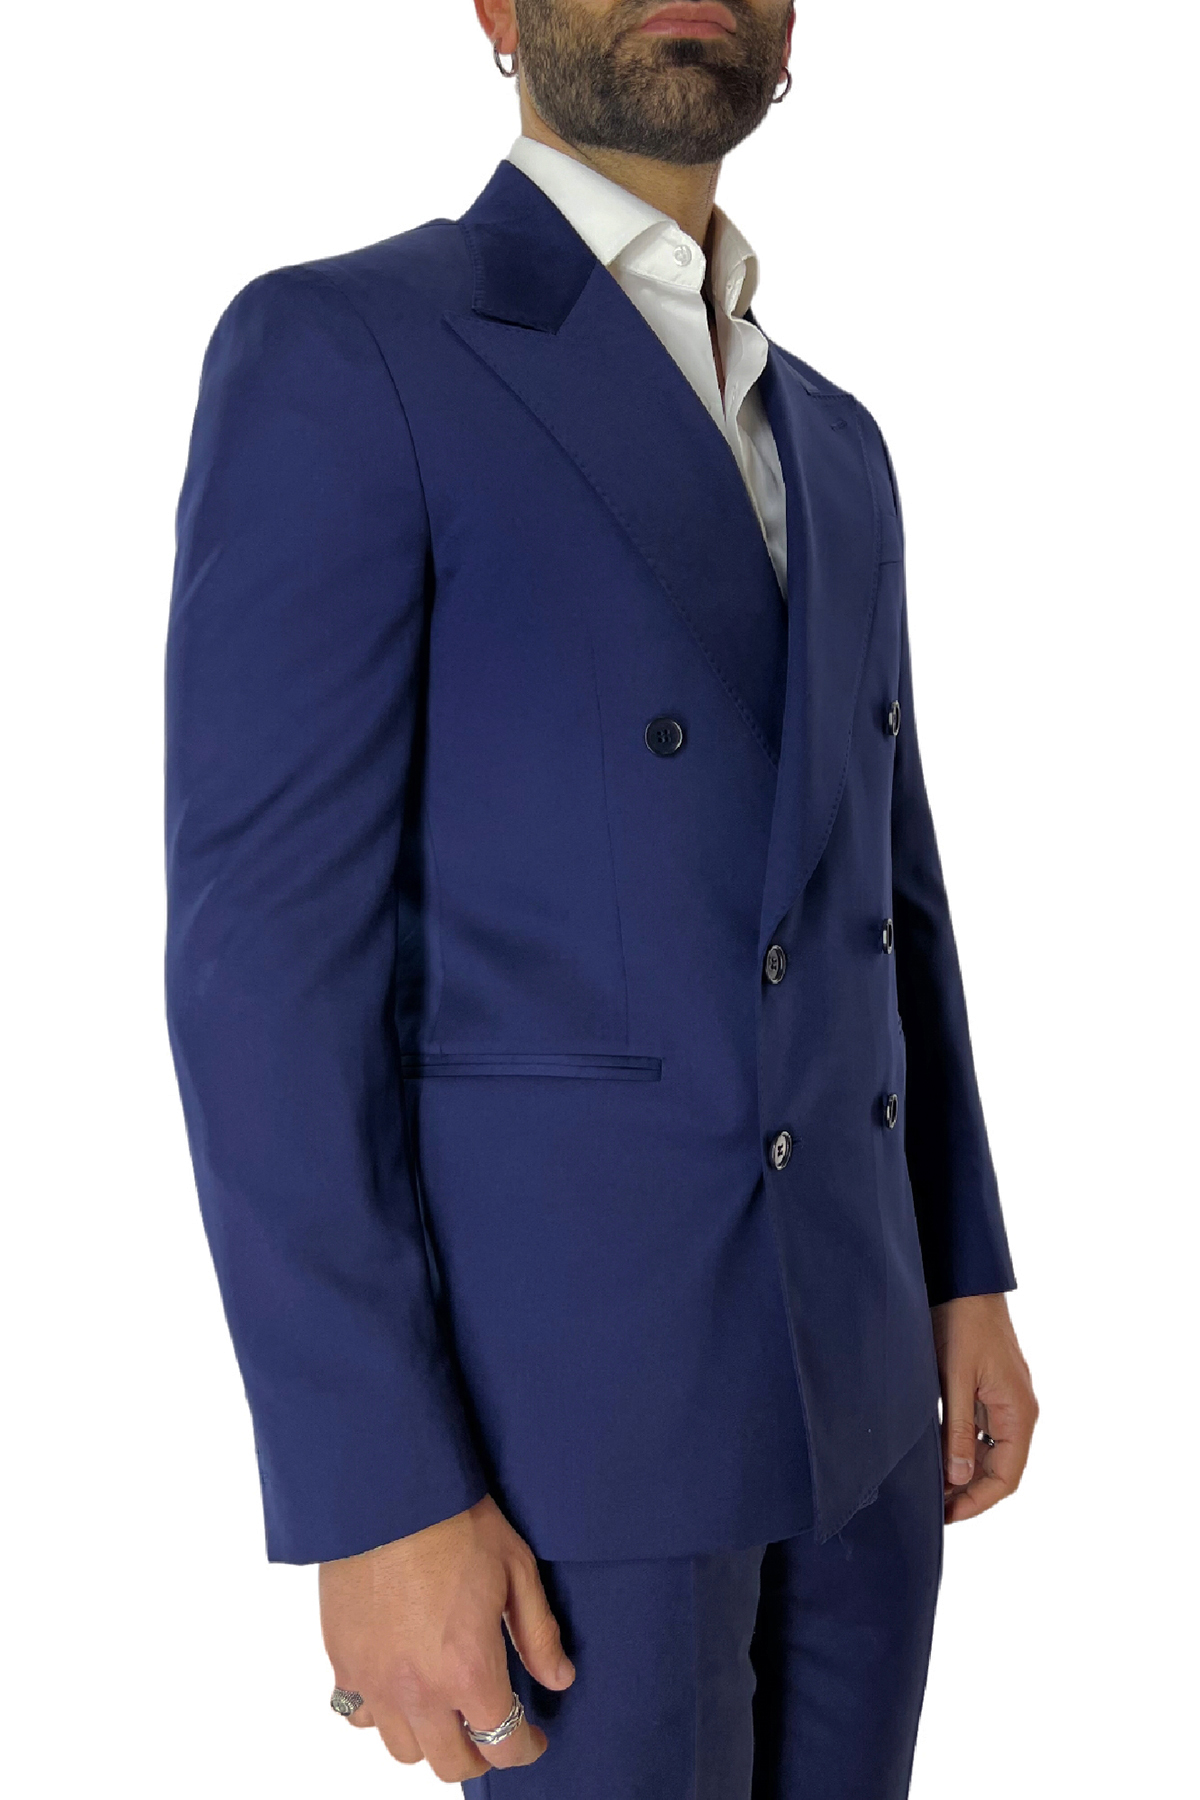 Abito uomo con giacca doppiopetto blu royal rever a lancia e pantalone tasca america in fresco lana 100% Vitale Barberis Canonico